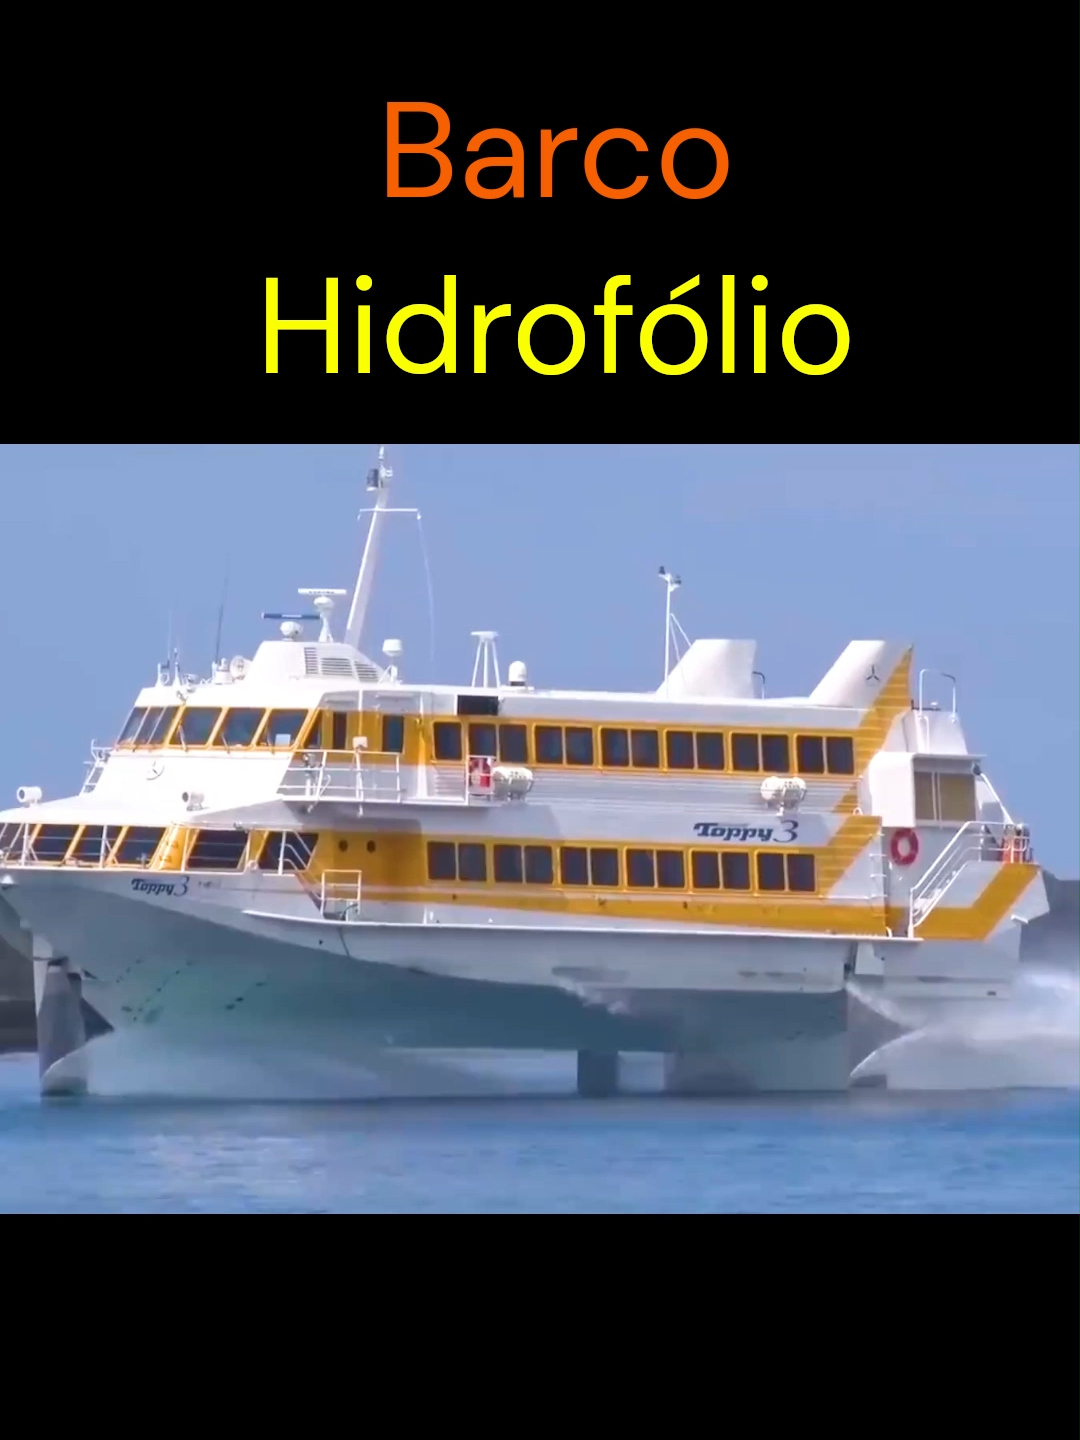 Barco Hidrofólio